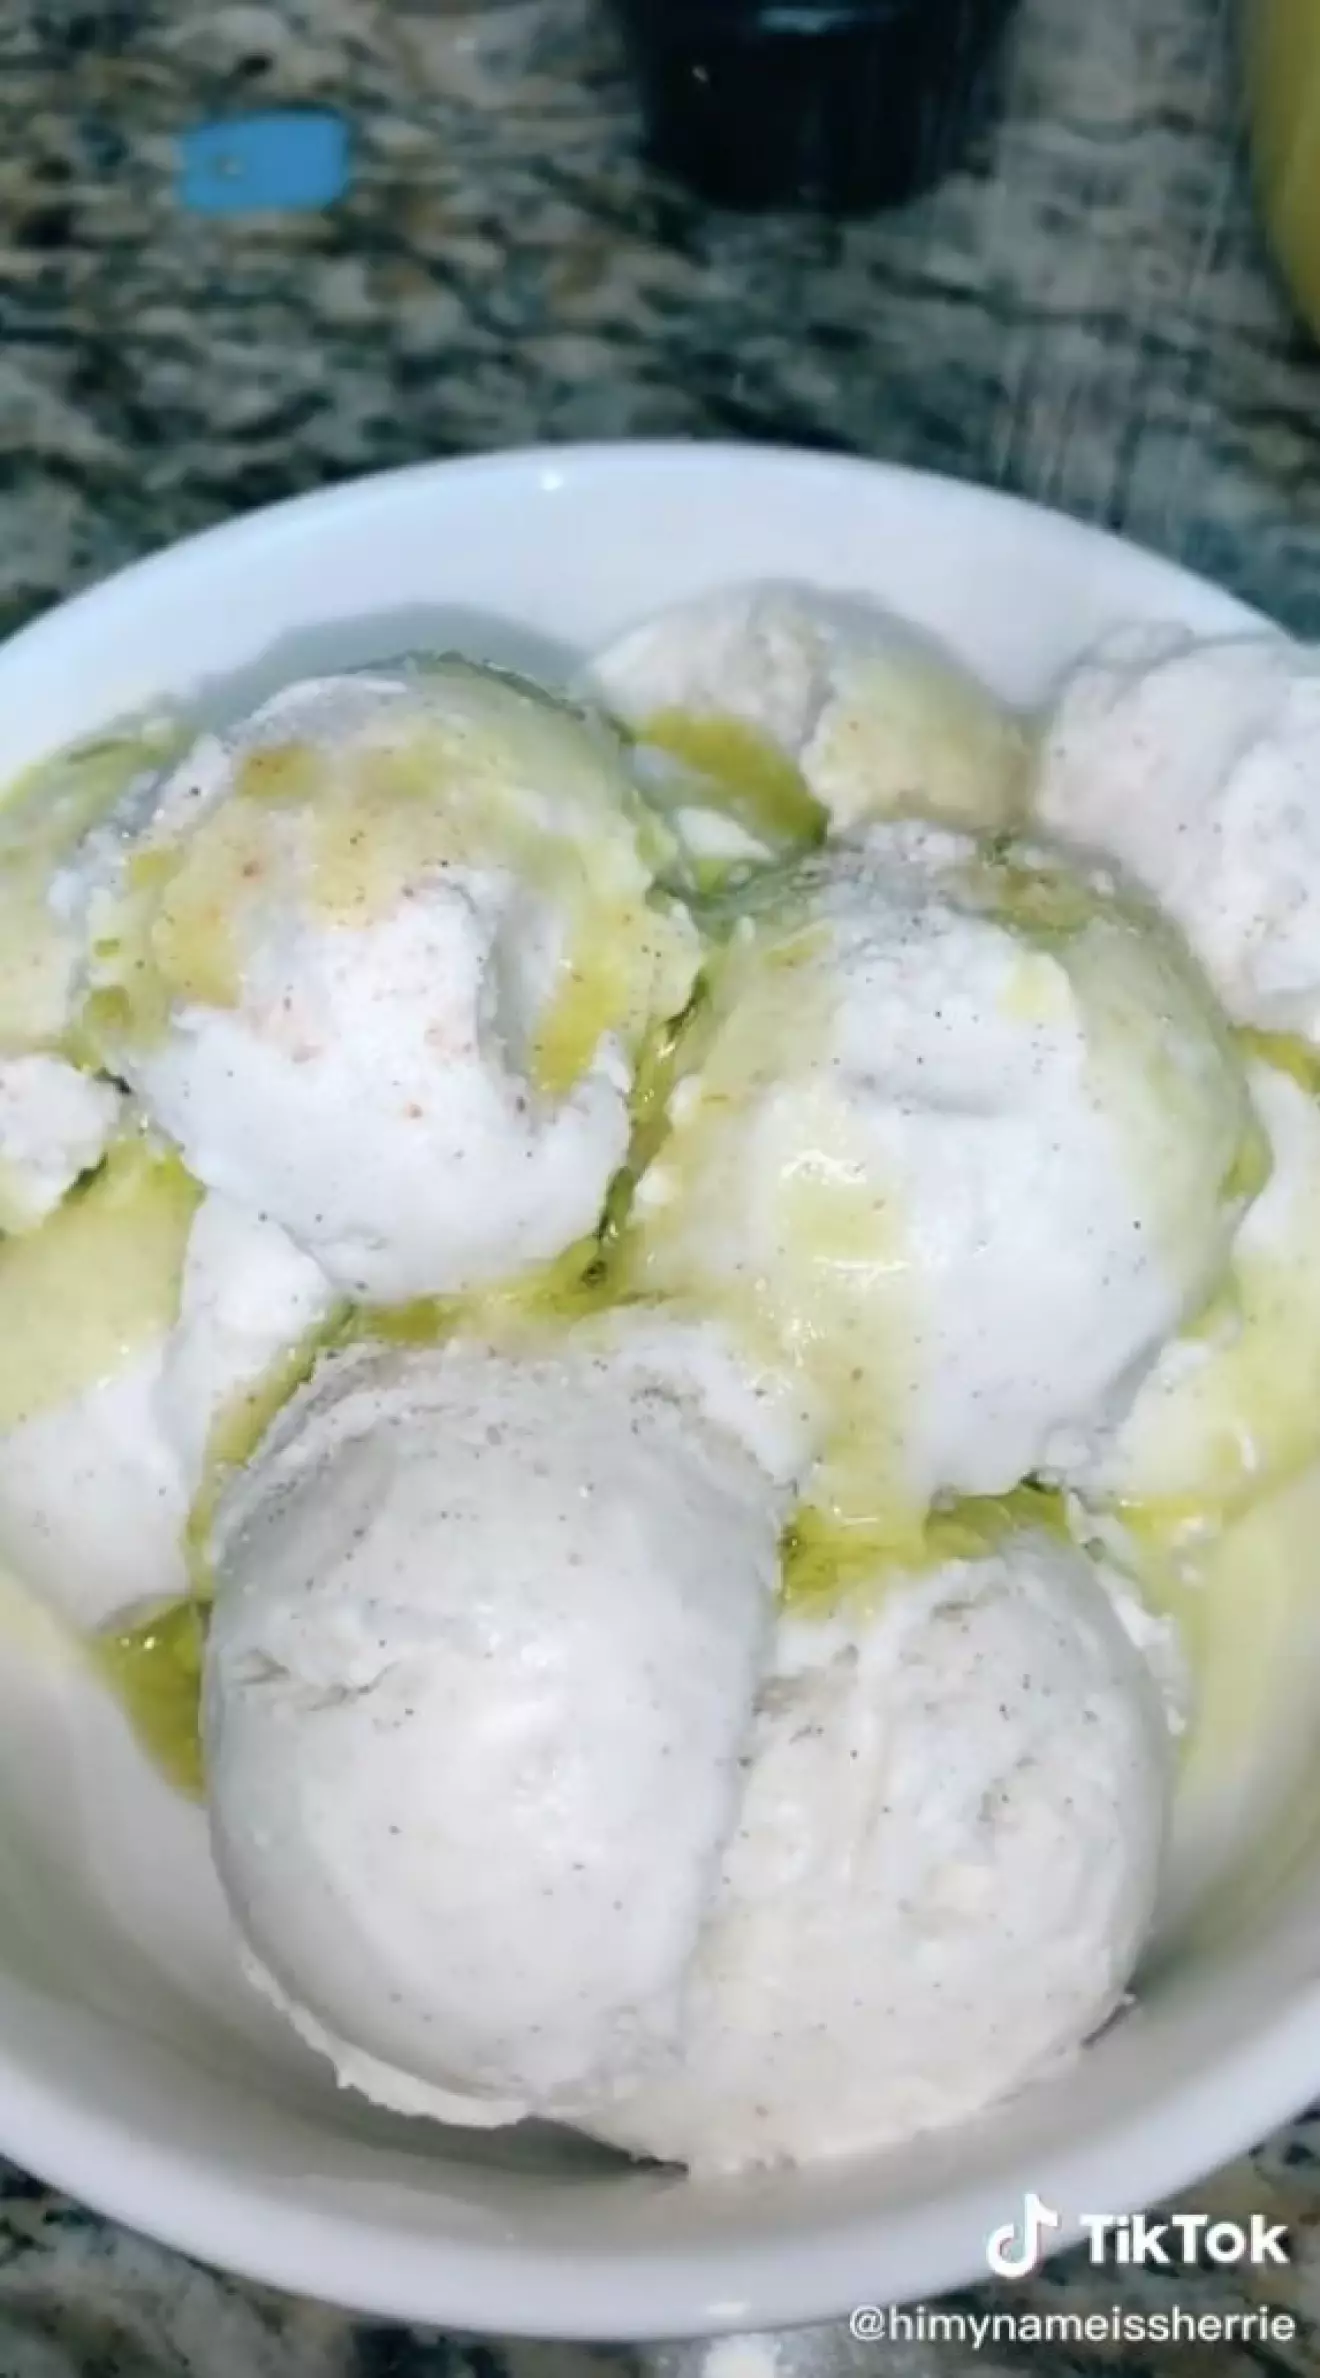 Vaniljglass med olivolja och salt i en video på Tiktok